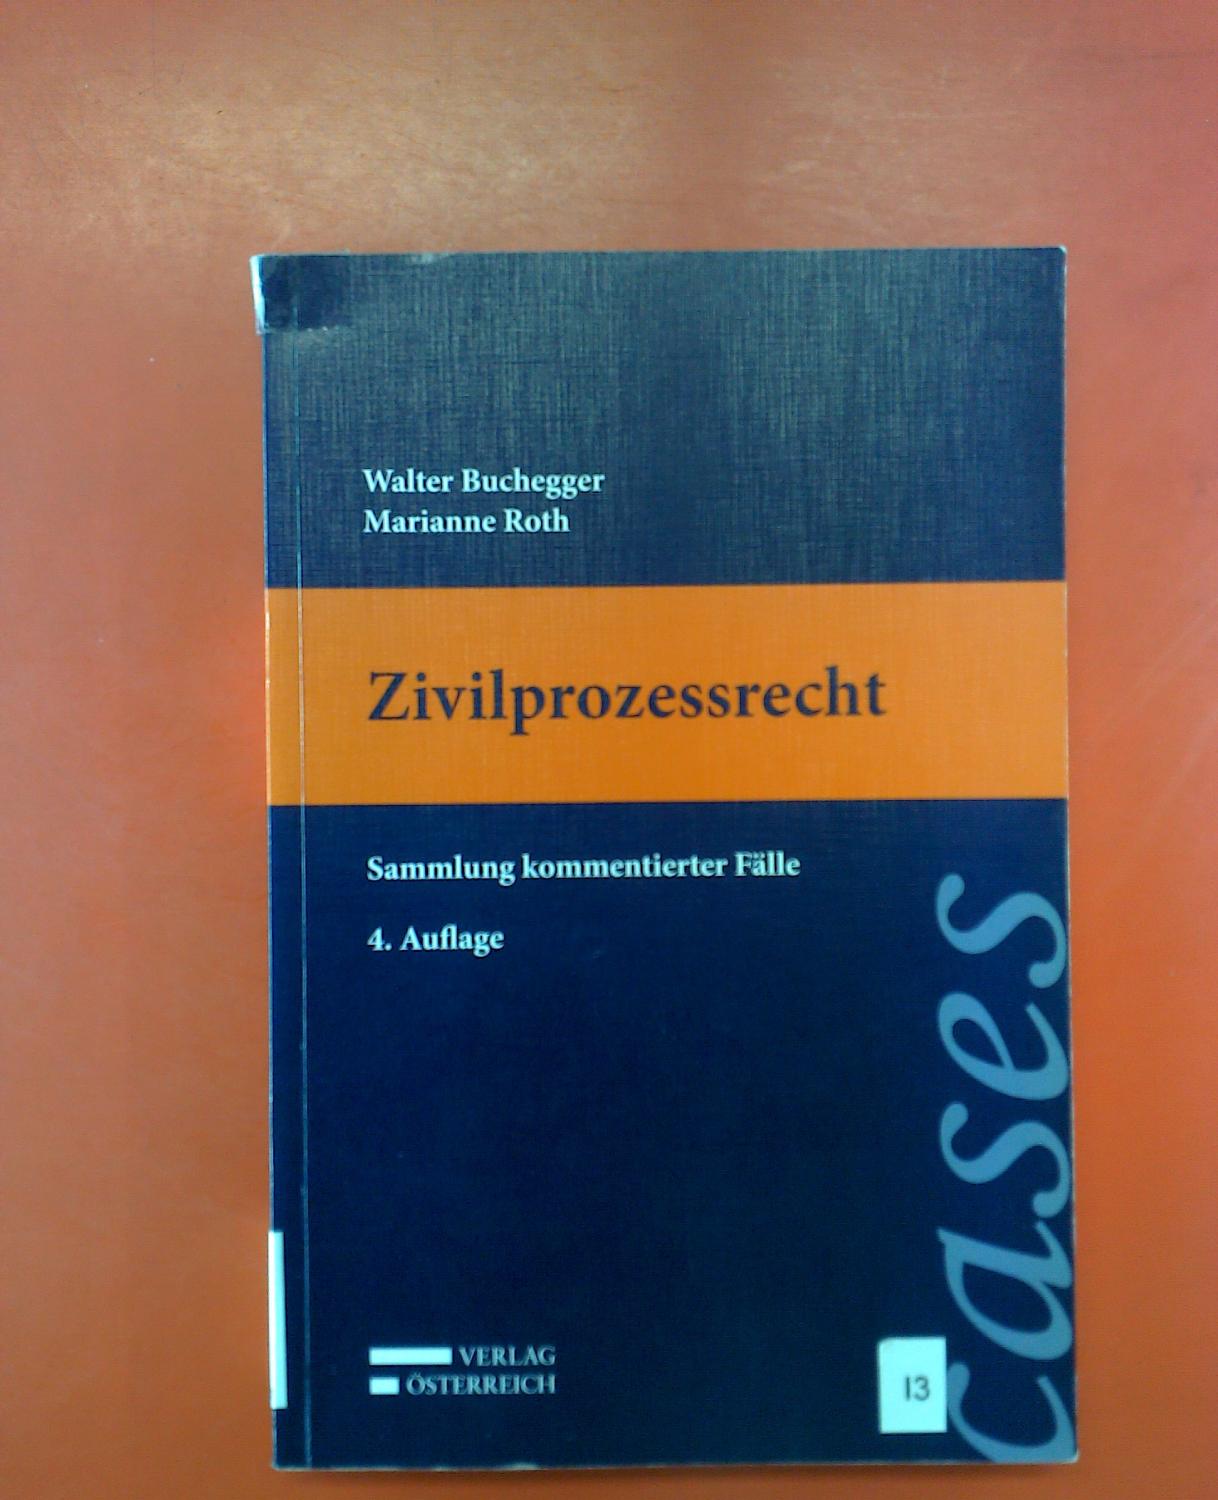 Zivilprozessrecht. Sammlung kommentierter Fälle. 4., erweiterte Auflage - Walter Buchegger. Marianne Roth.